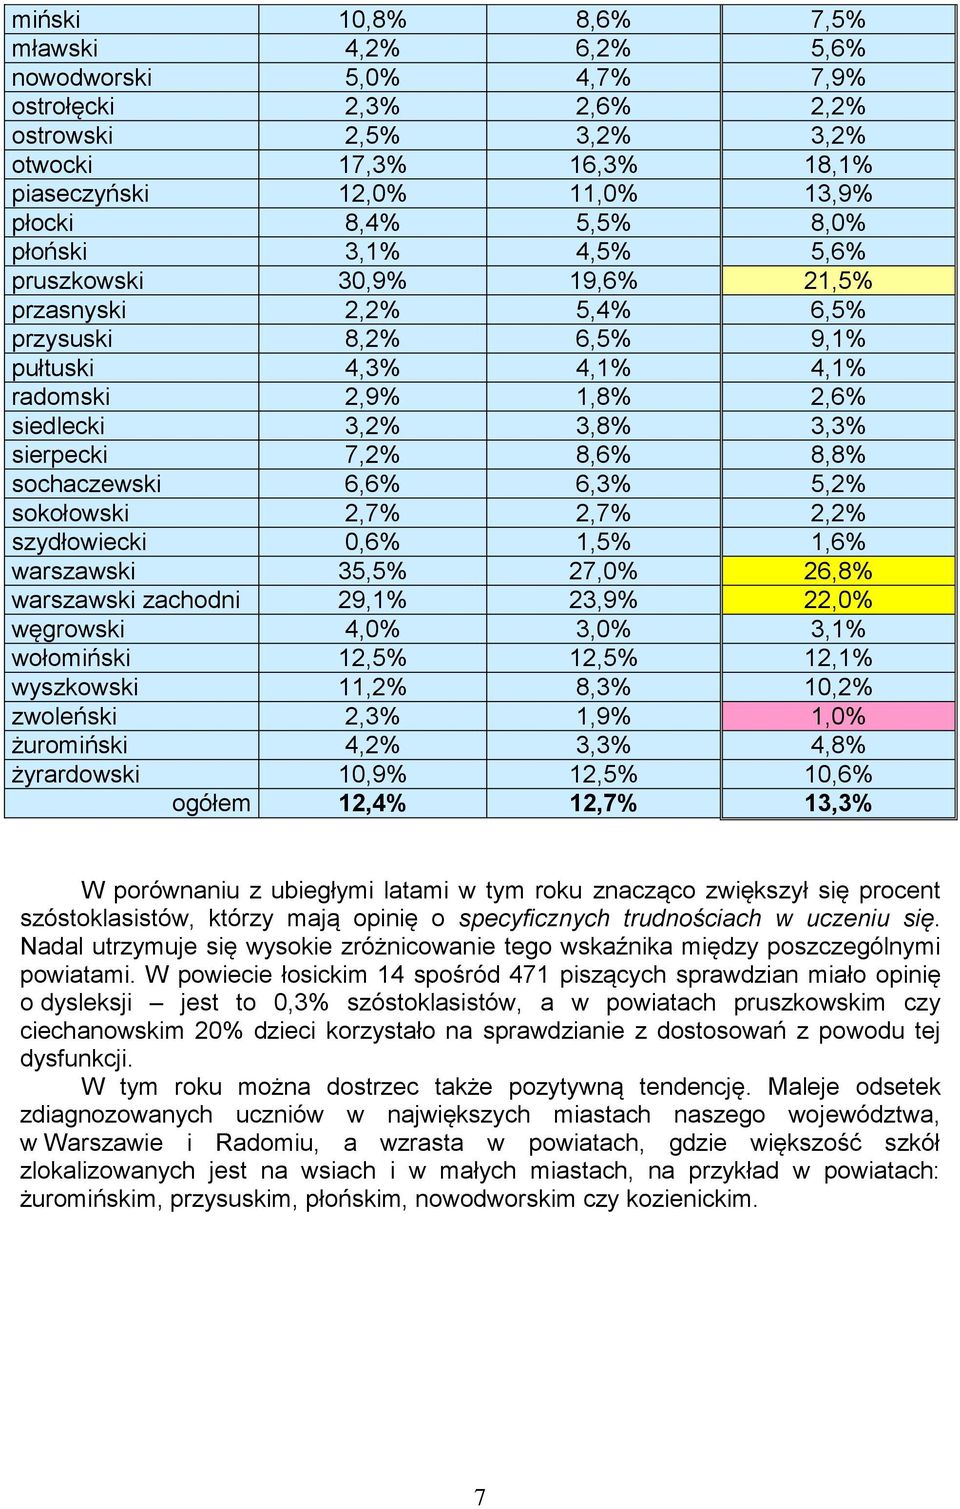 8,6% 8,8% sochaczewski 6,6% 6,3% 5,2% sokołowski 2,7% 2,7% 2,2% szydłowiecki 0,6% 1,5% 1,6% warszawski 35,5% 27,0% 26,8% warszawski zachodni 29,1% 23,9% 22,0% węgrowski 4,0% 3,0% 3,1% wołomiński